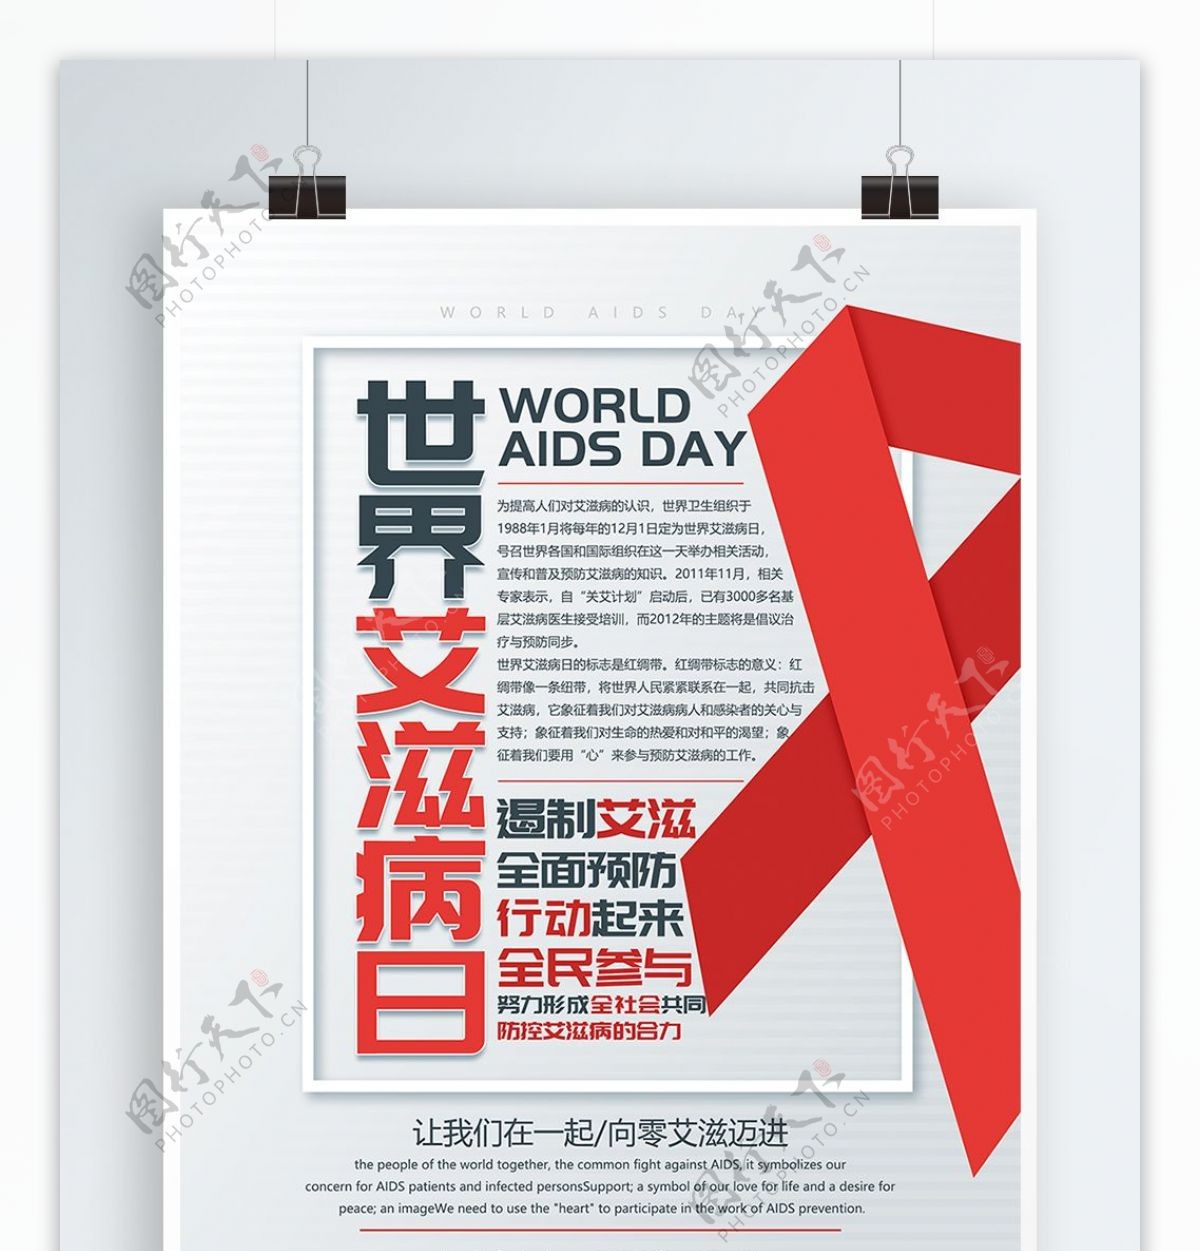 原创清新醒目世界艾滋病日活动宣传海报设计